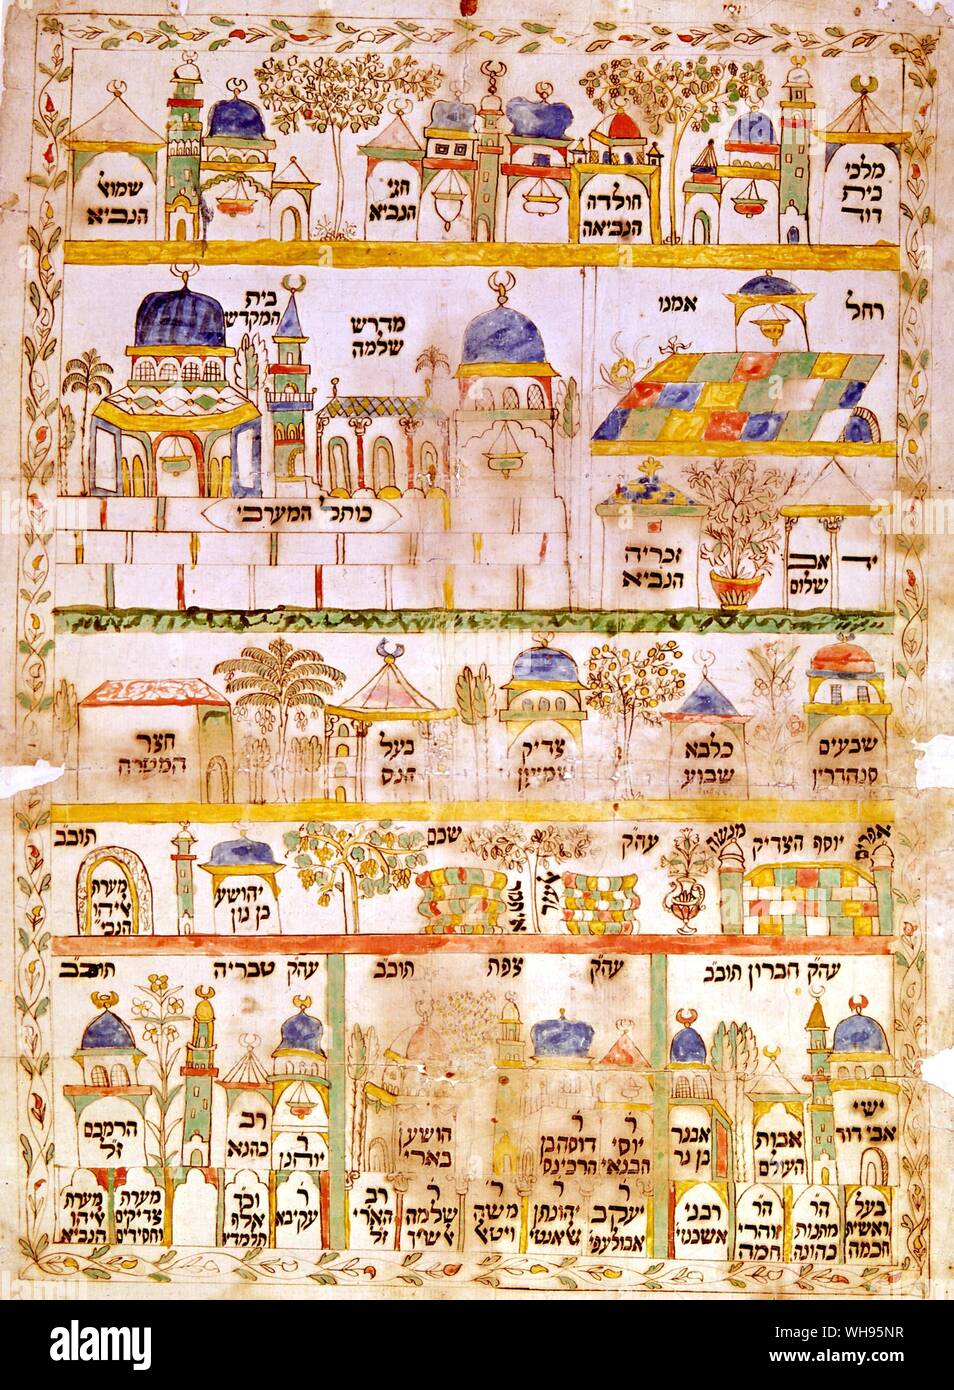 Bar Mitzvah, lugares sagrados judíos - Itinerarium. Siglo xix, pintado a mano/Hebreo desde el Museo de Israel, Jerusalén. Foto de stock